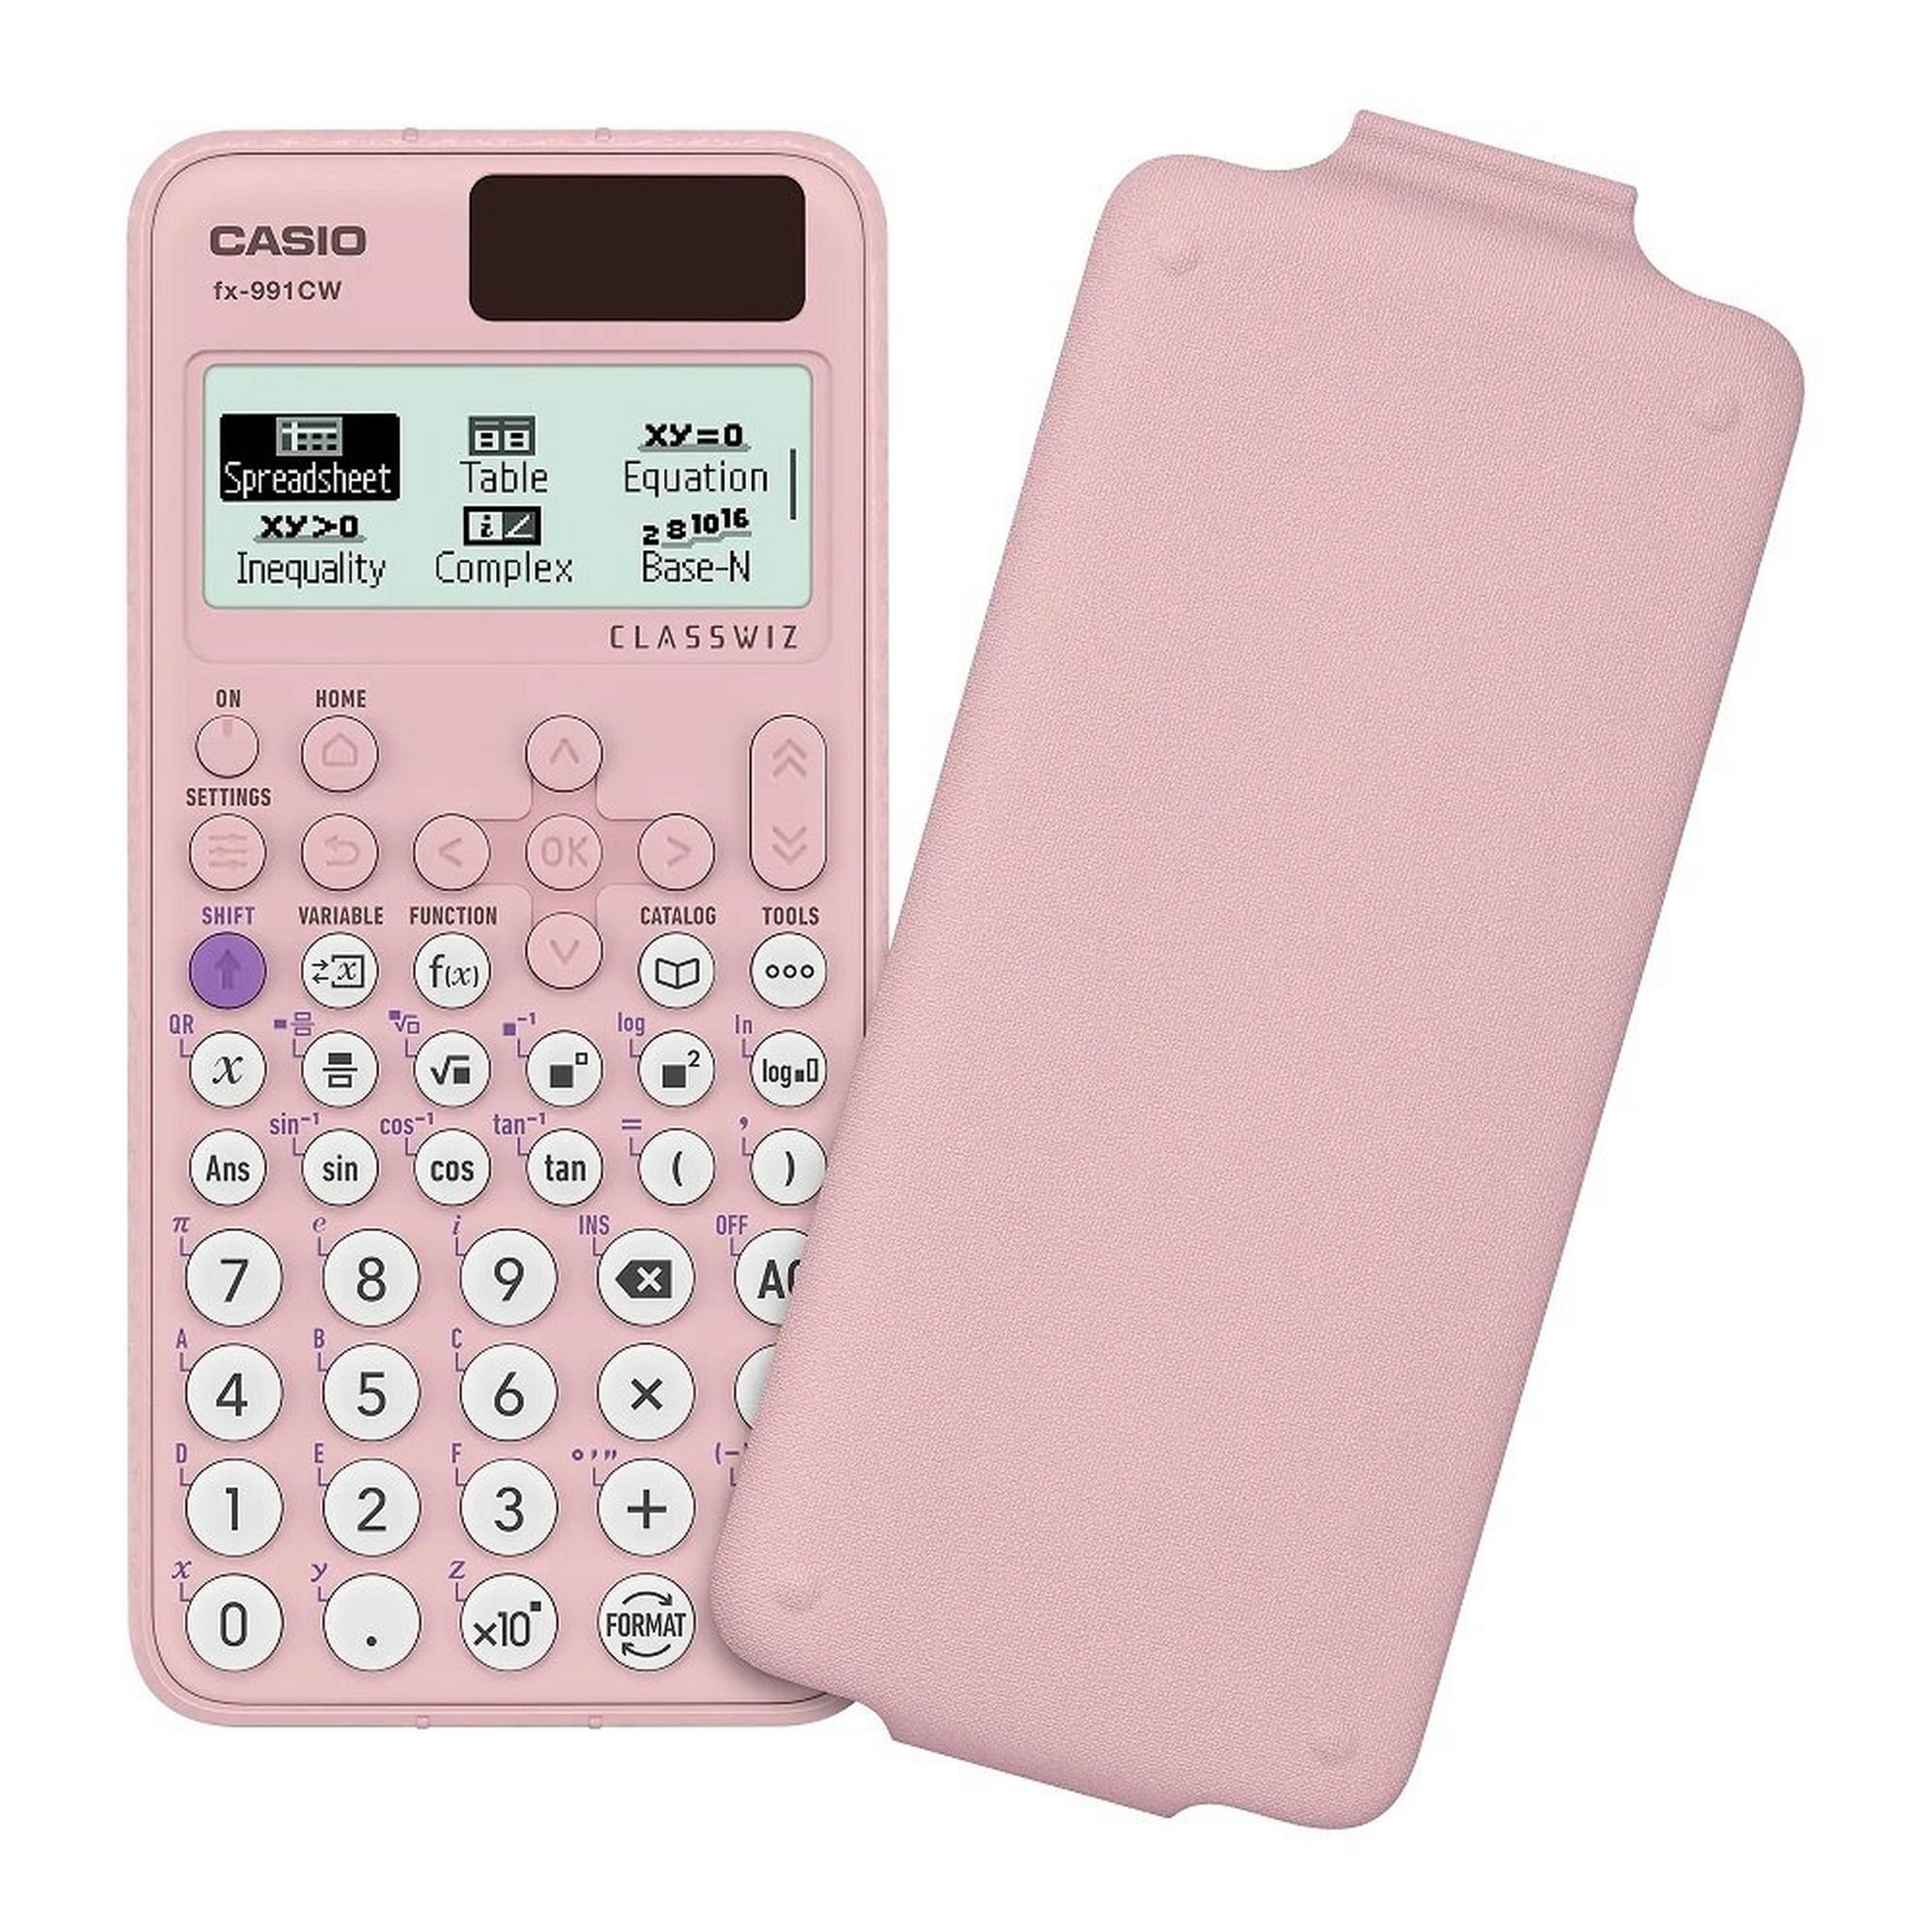 Casio FX-991CW Standard Scientific Calculator - Pink